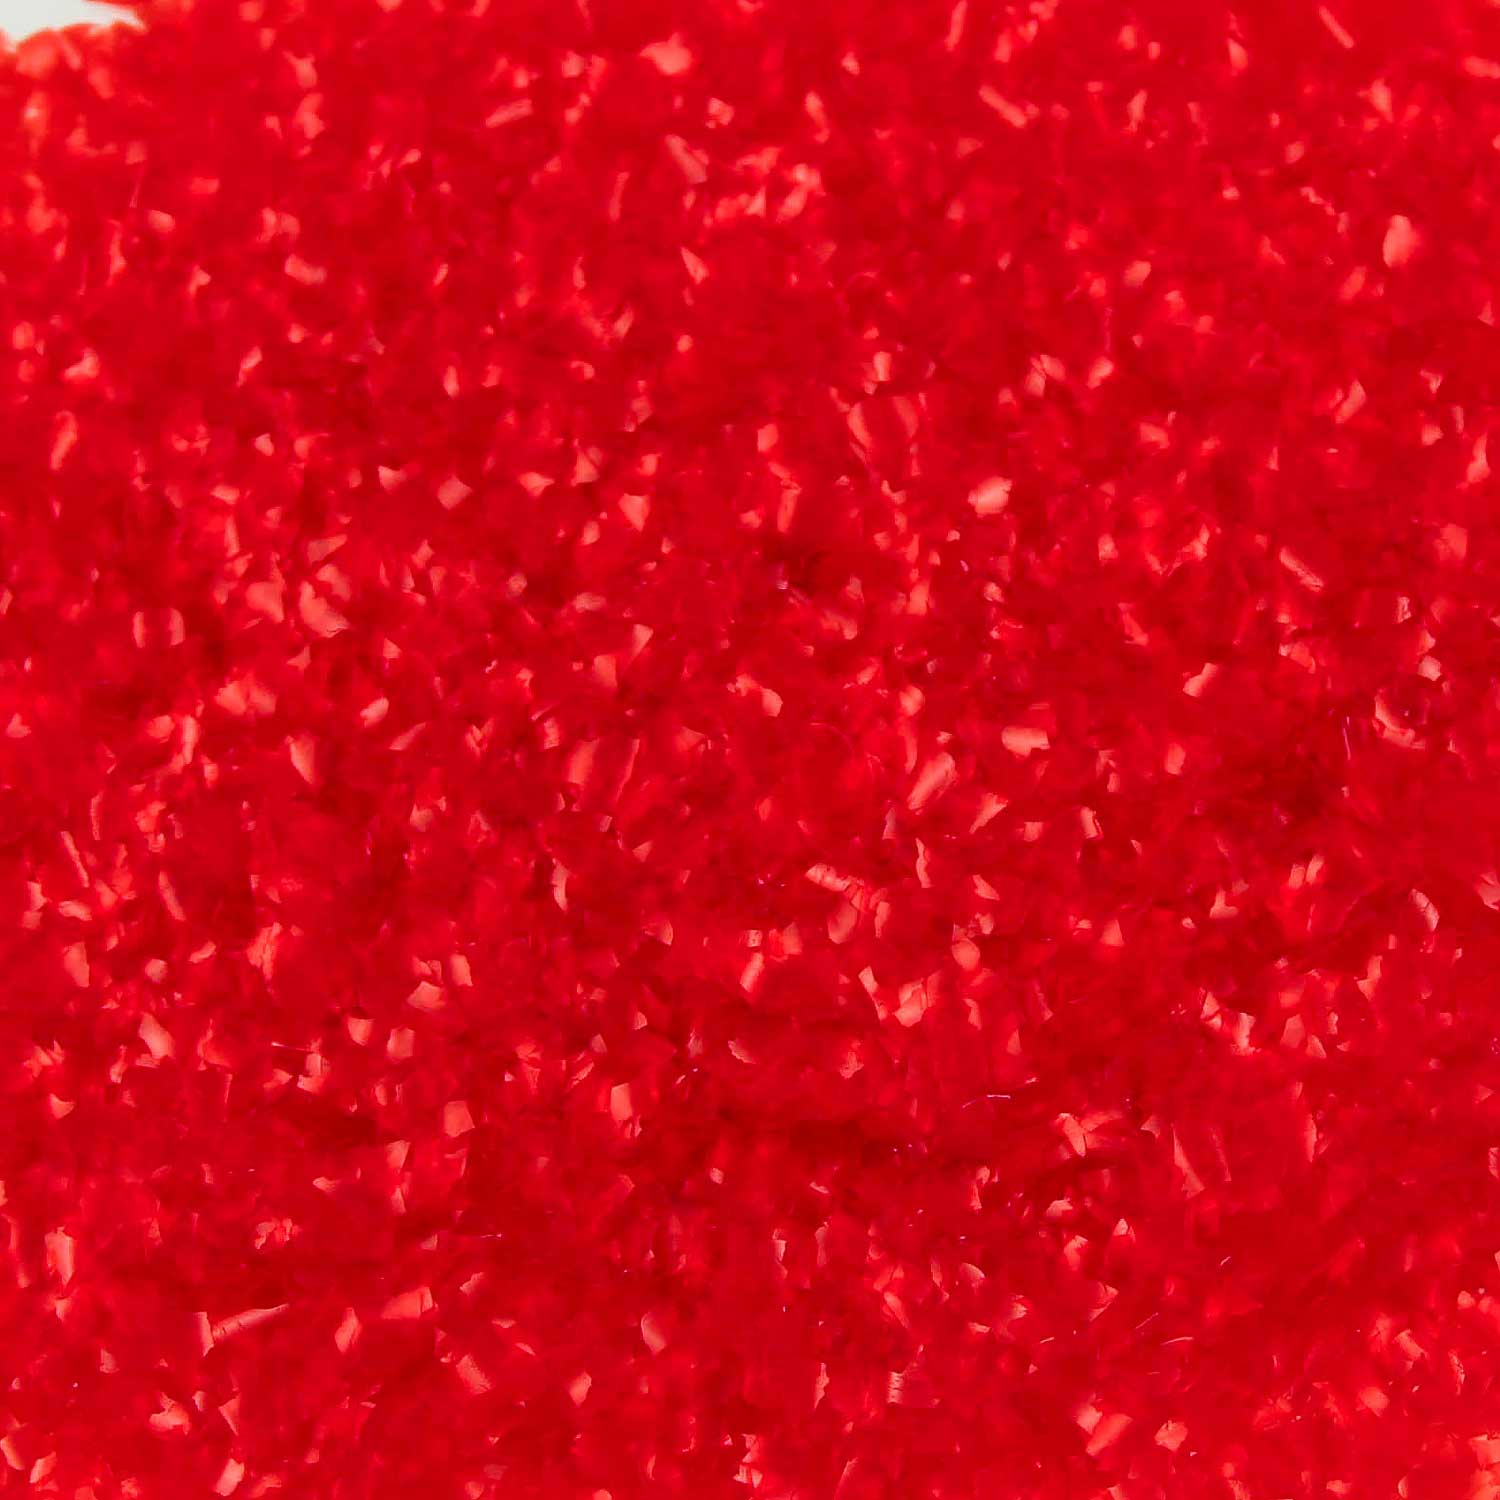 Celebakes Red Edible Glitter, 1 oz.